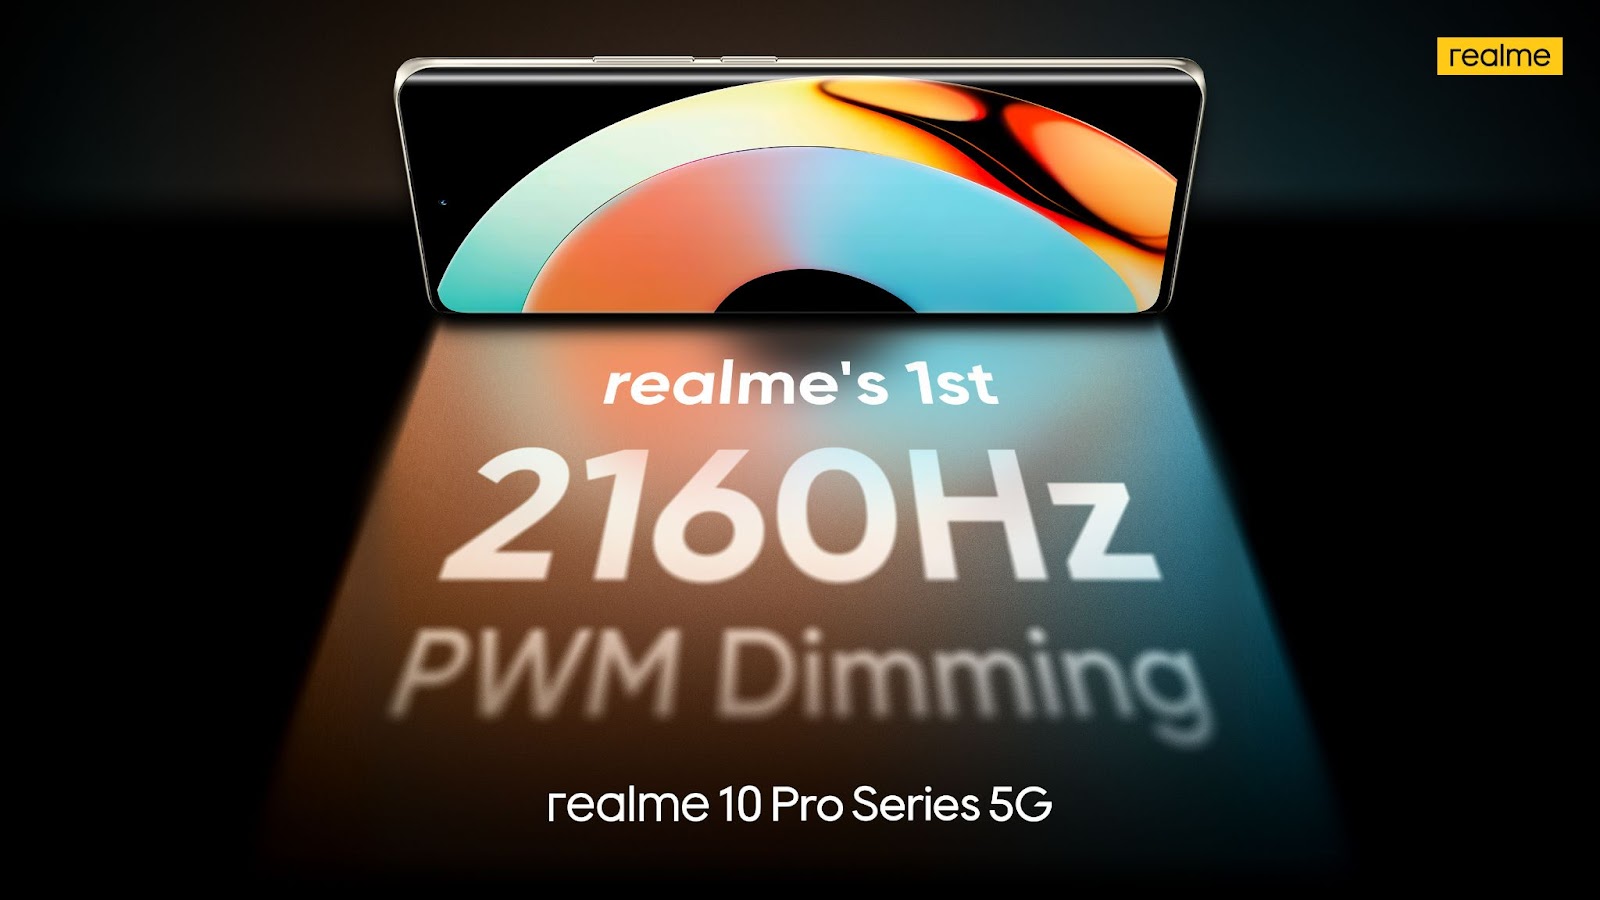 realme 10 Pro+ 5G